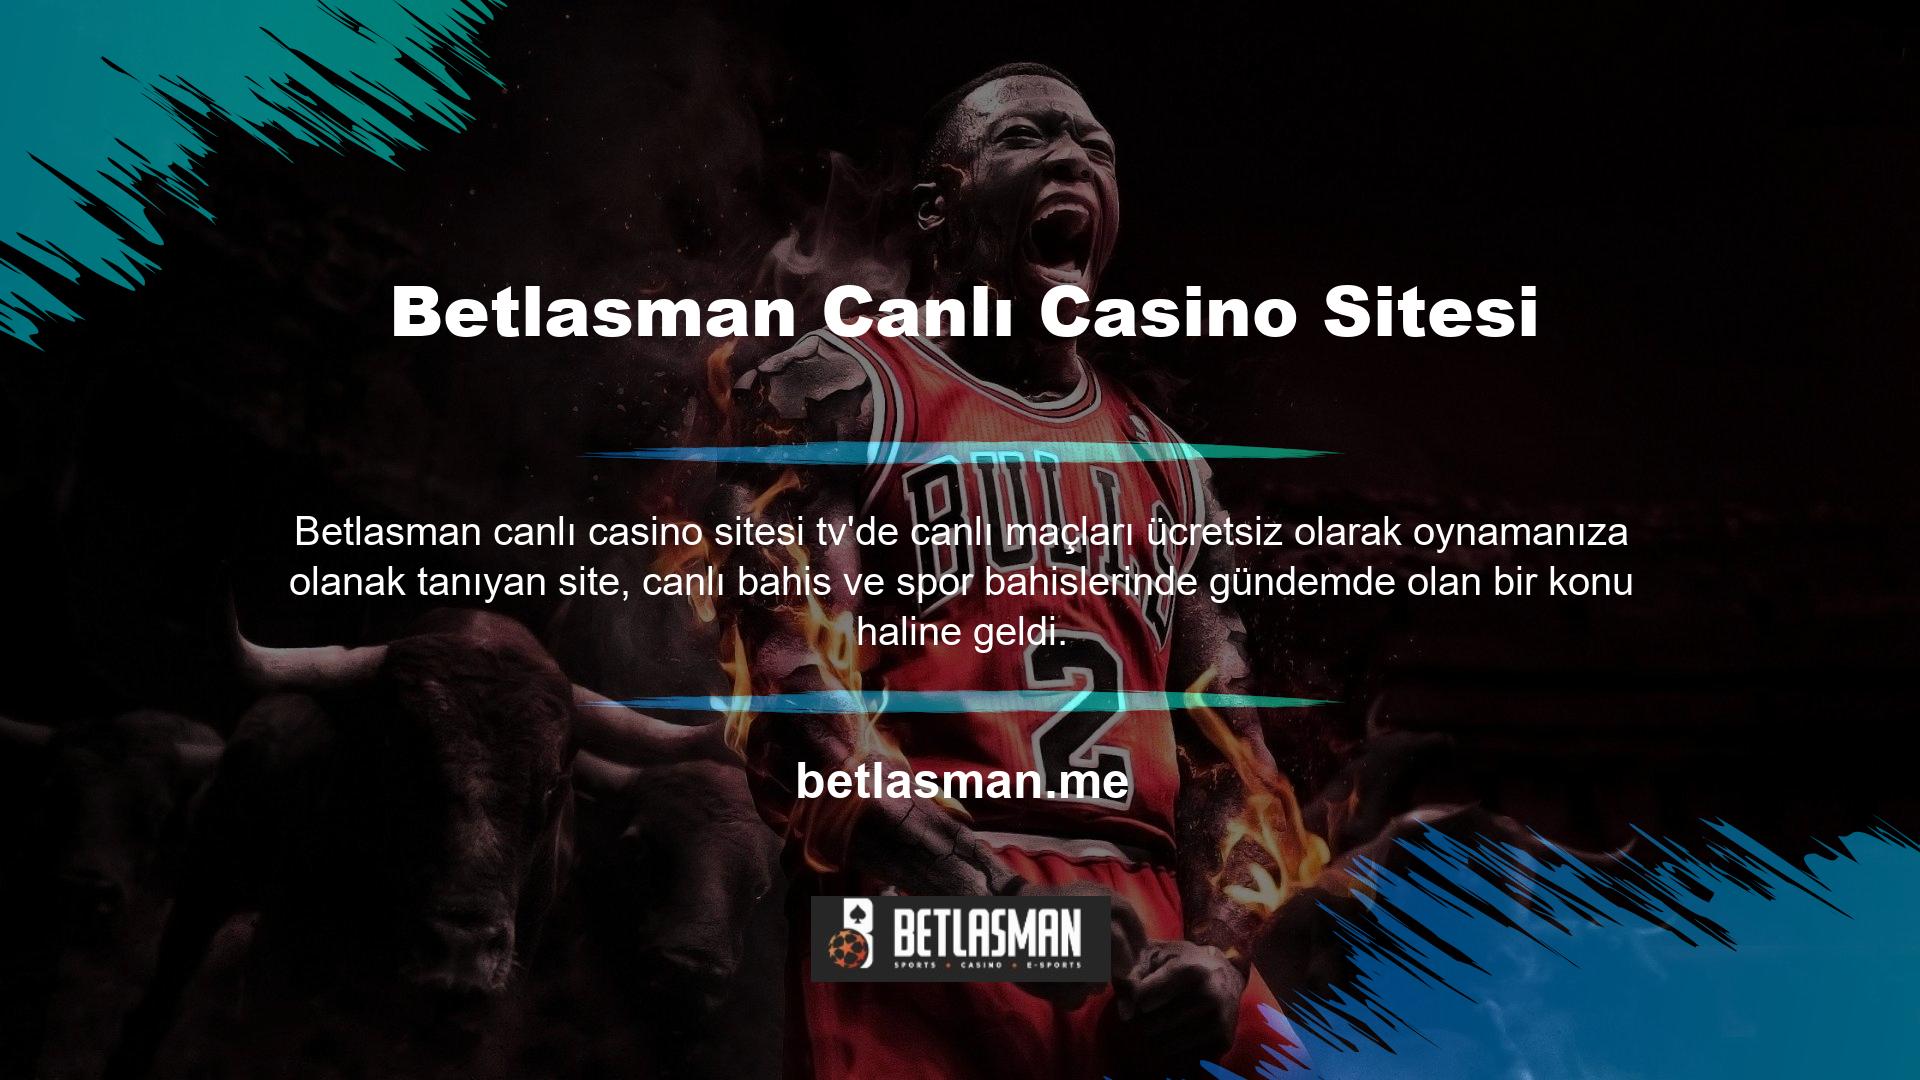 Canlı casino ve casino oyunlarıyla ilgili tüm içerikler Web Sitesinin yakınında yer alabilir